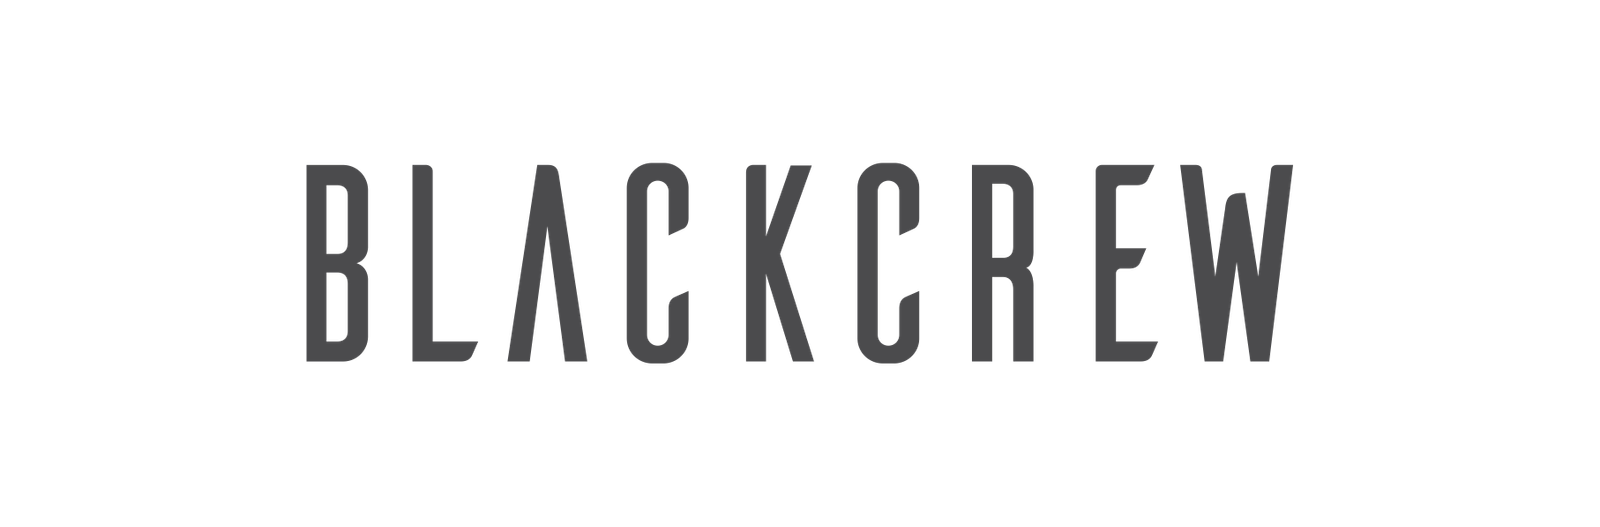 BlackCrew | Bem-vindo ao time